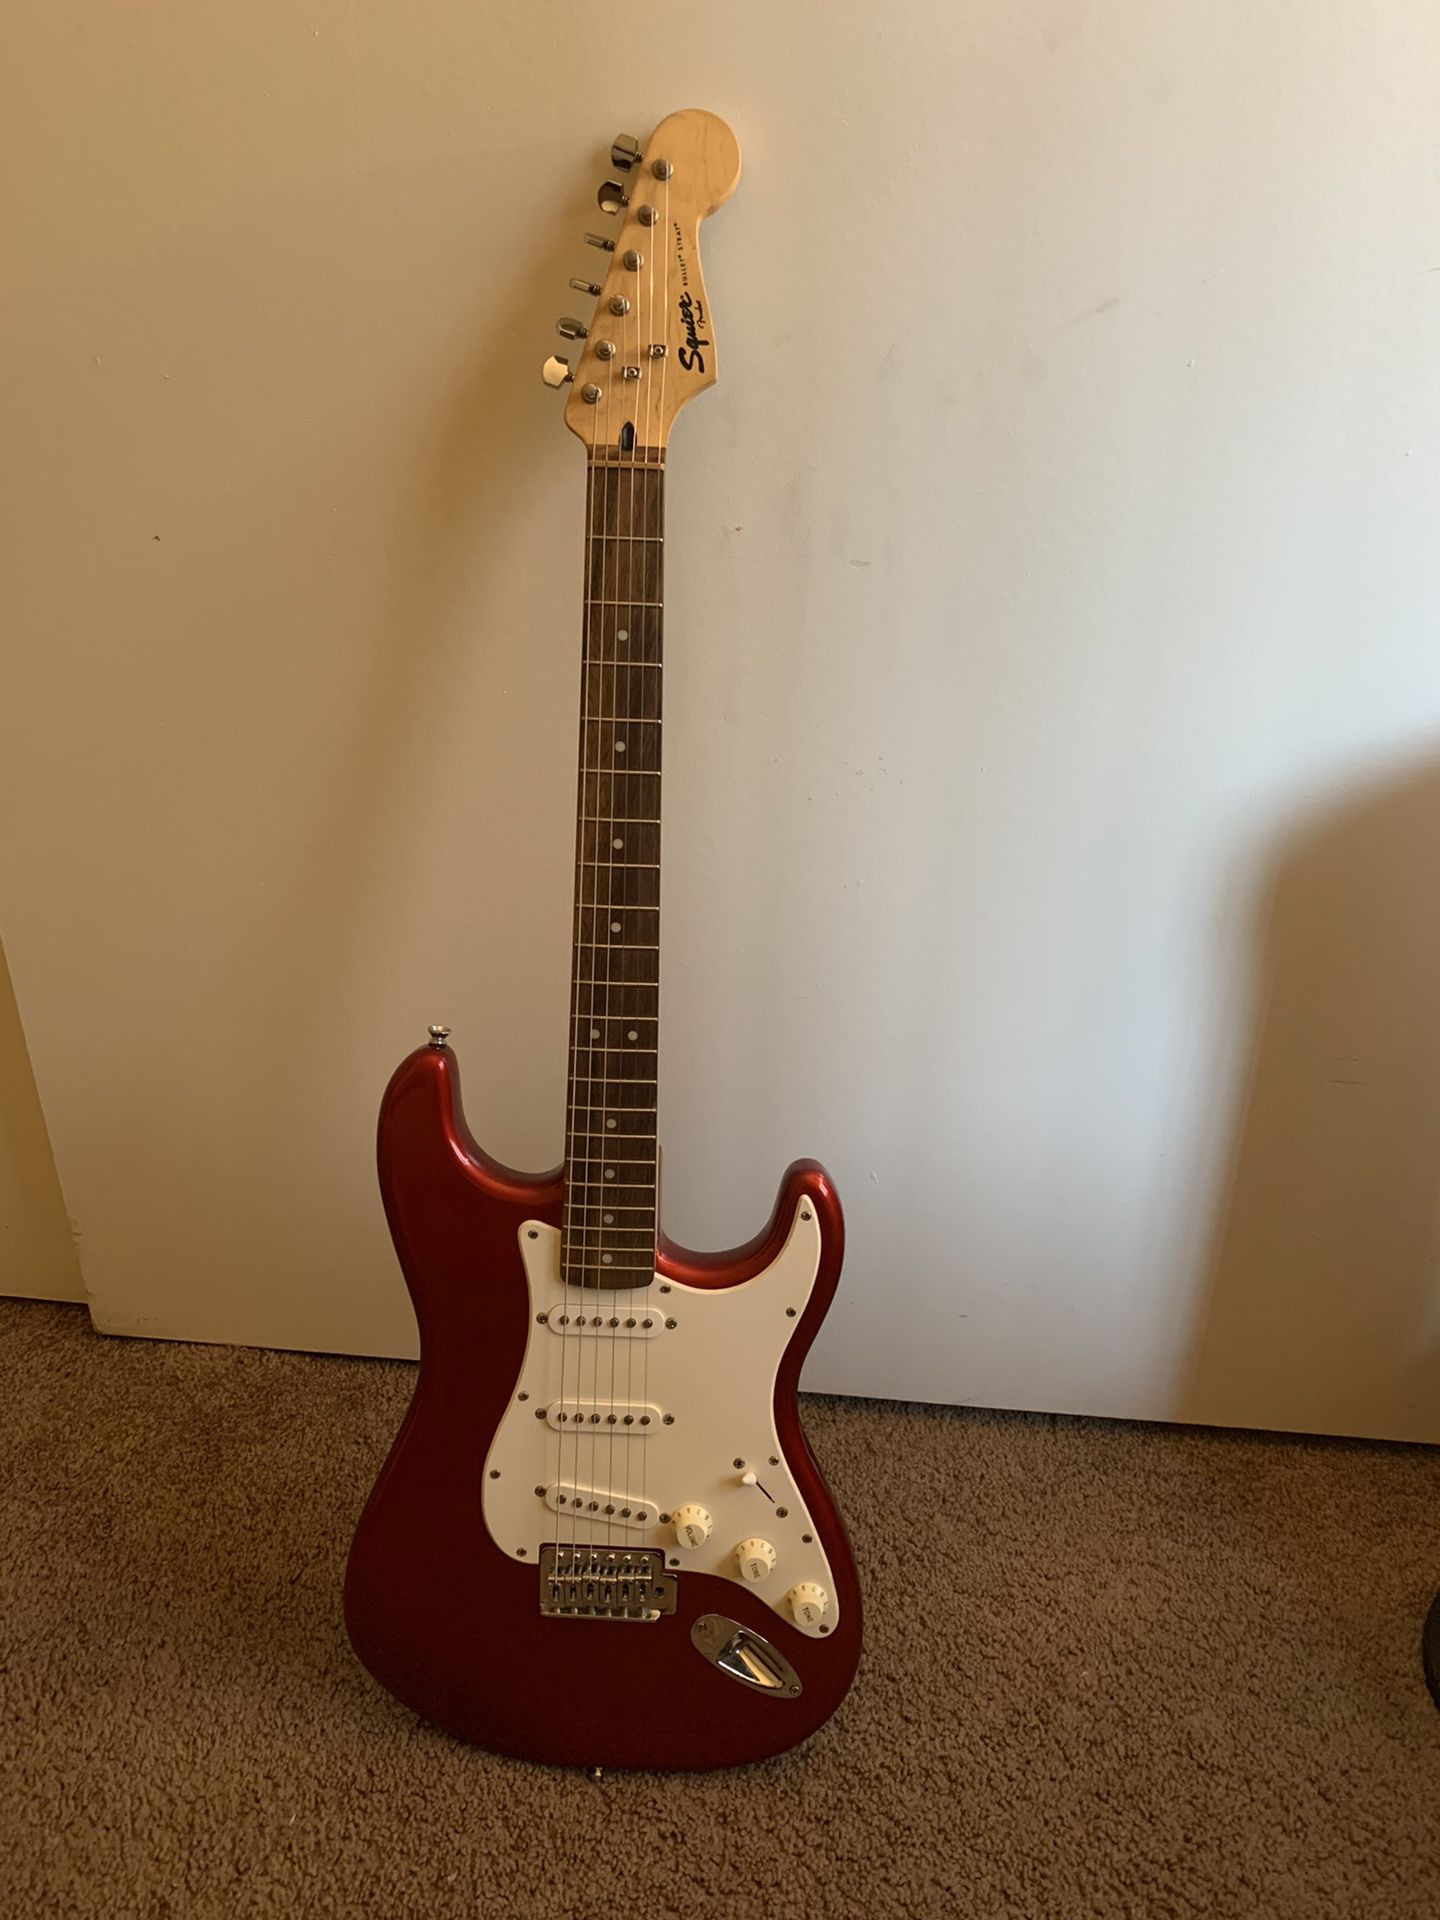 Fender Squire guitar